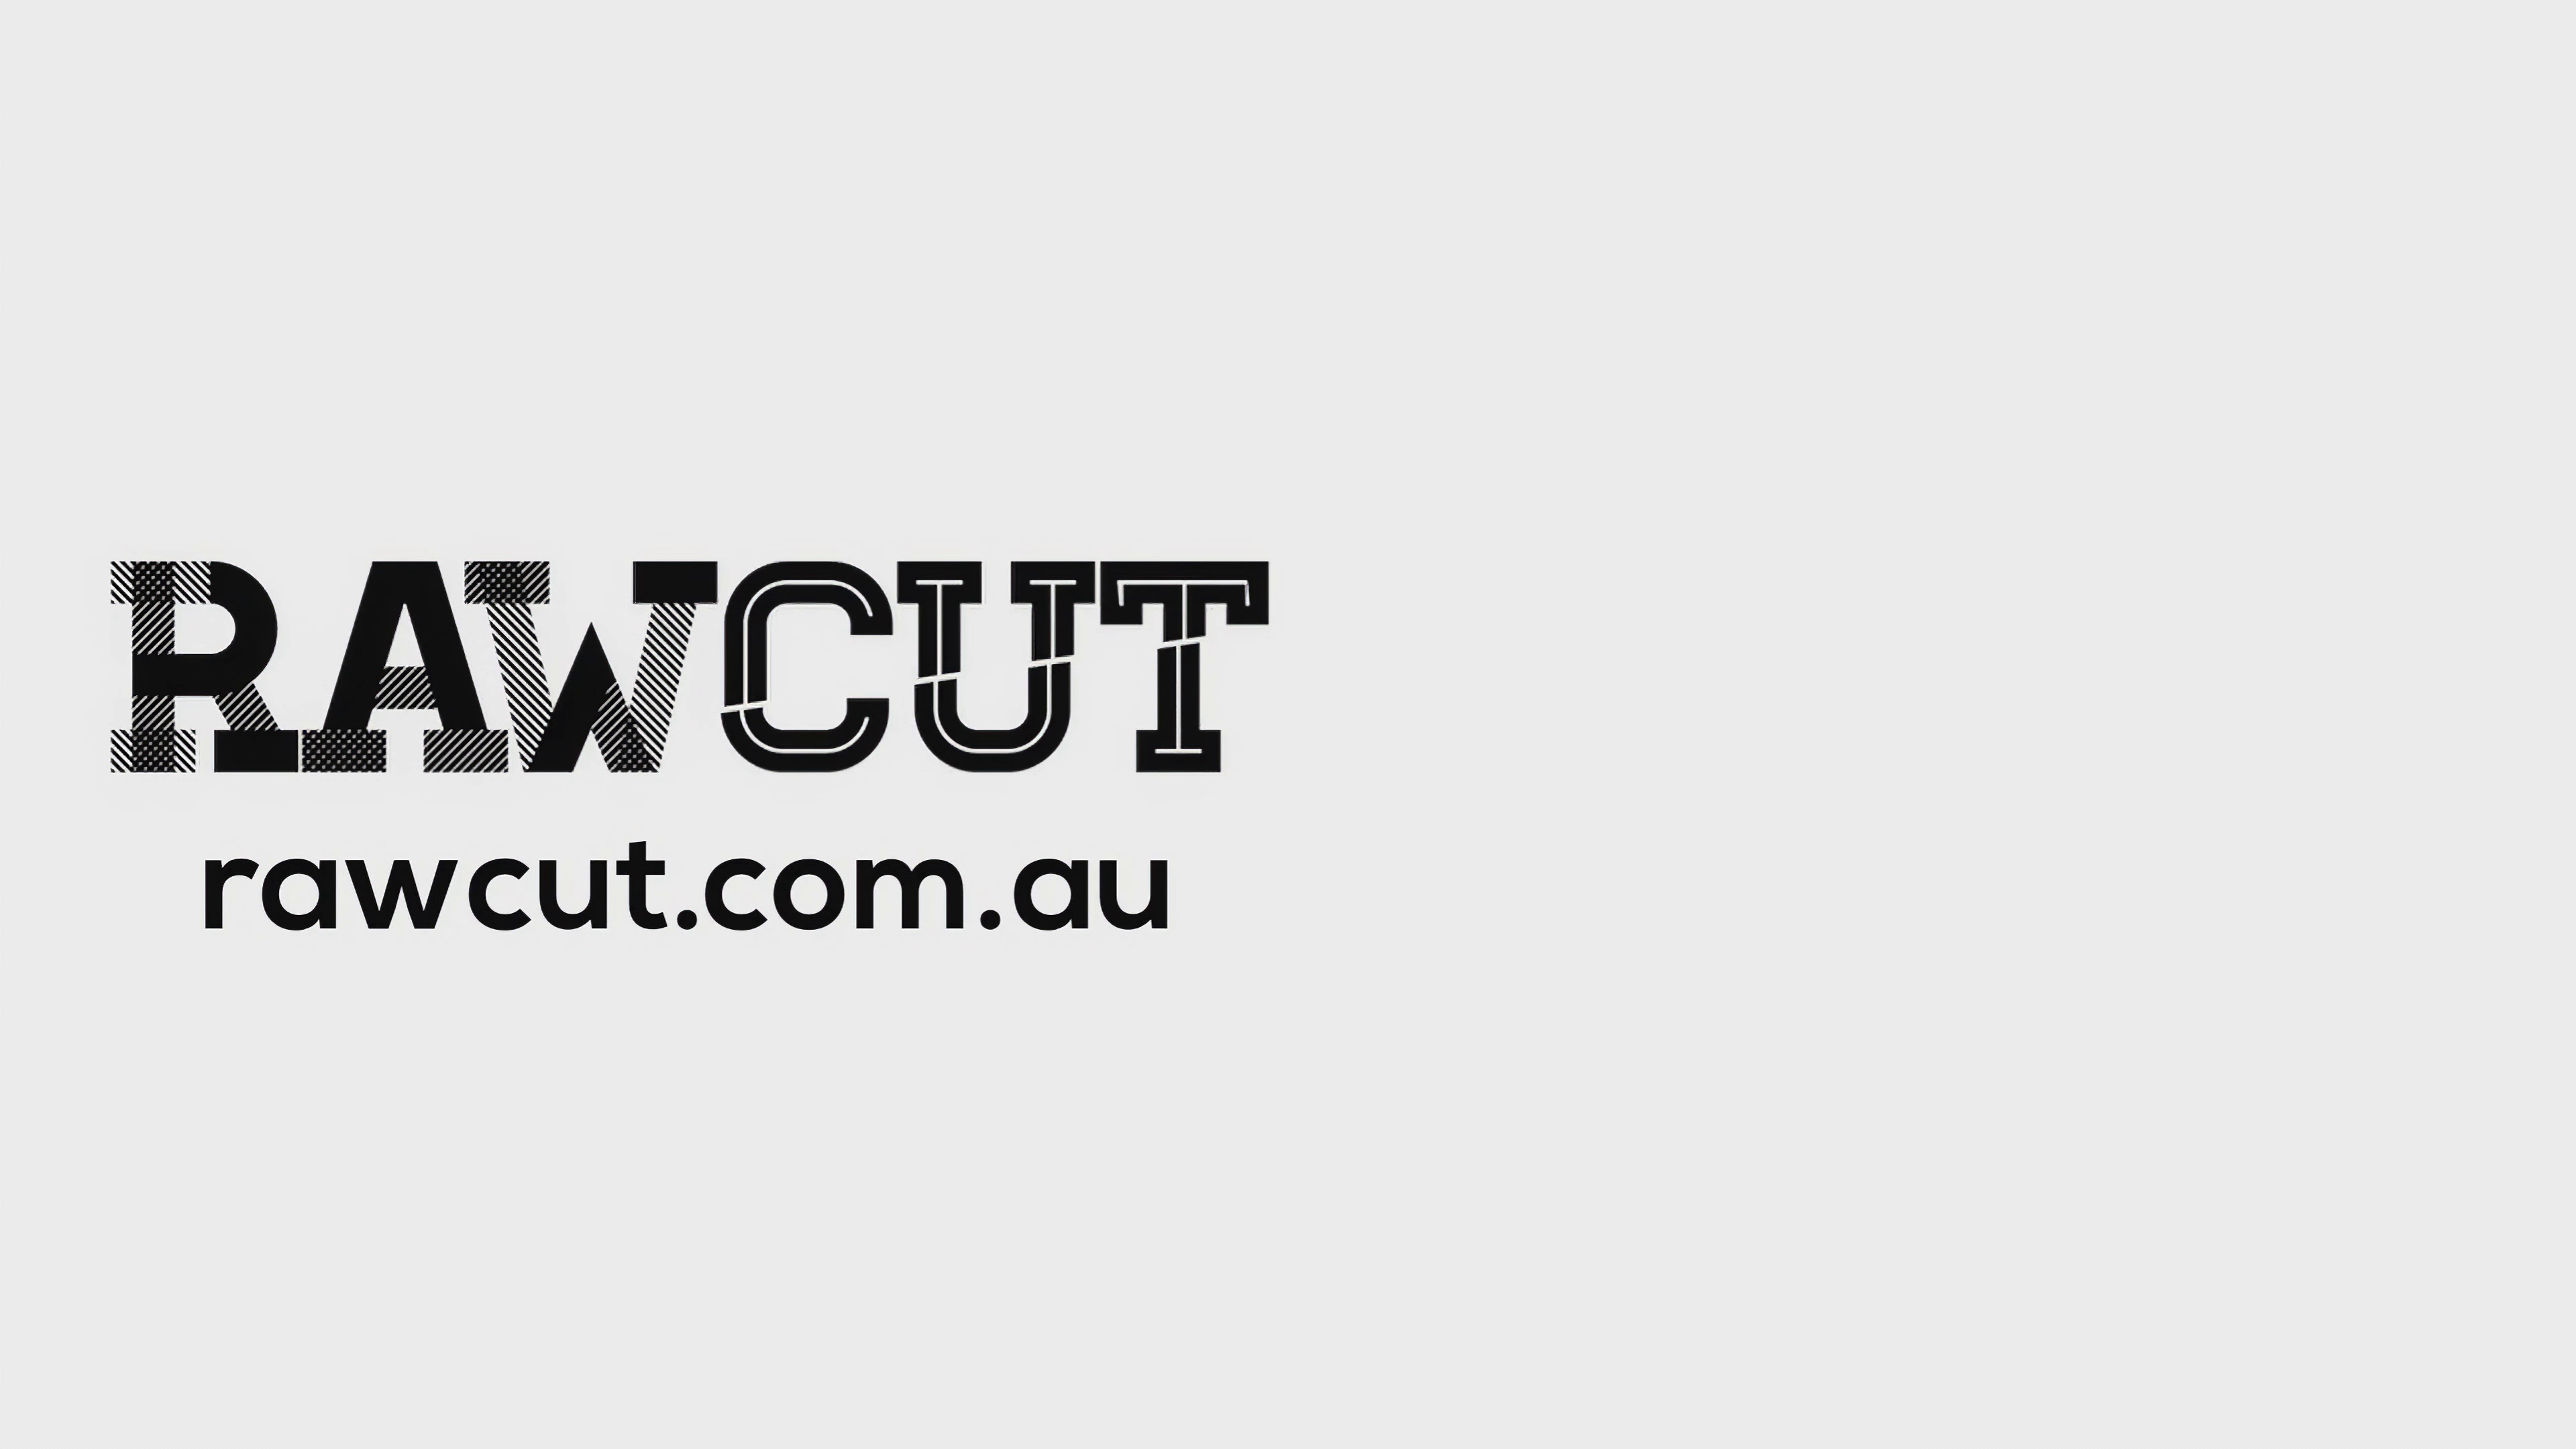 RawCut logo and web address.